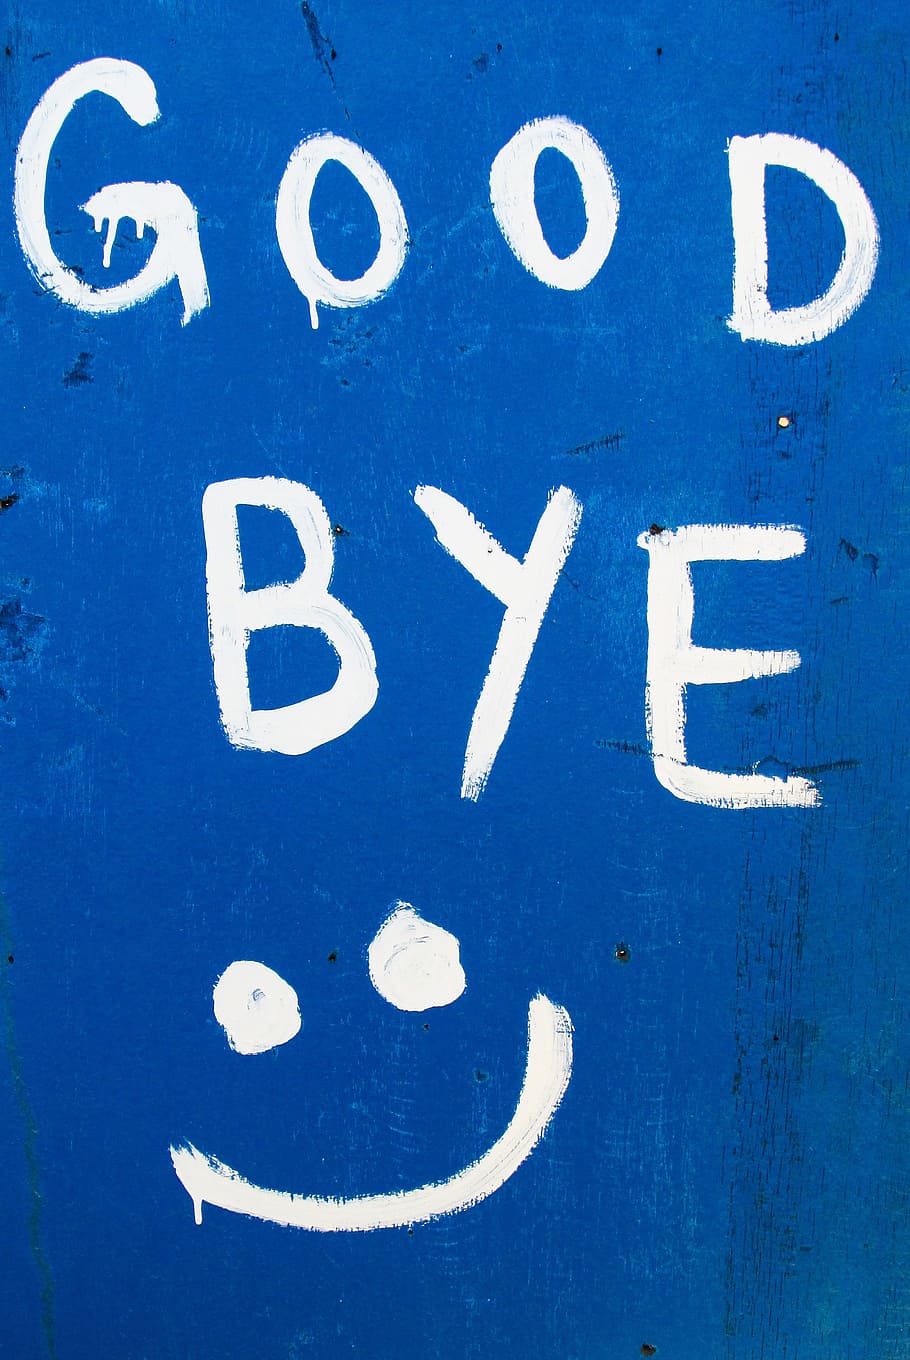 さようならサイン, さようなら, 面白い, サイン, おもてなし, 幸せ, キプロス, コミュニケーション, 青, 人なし